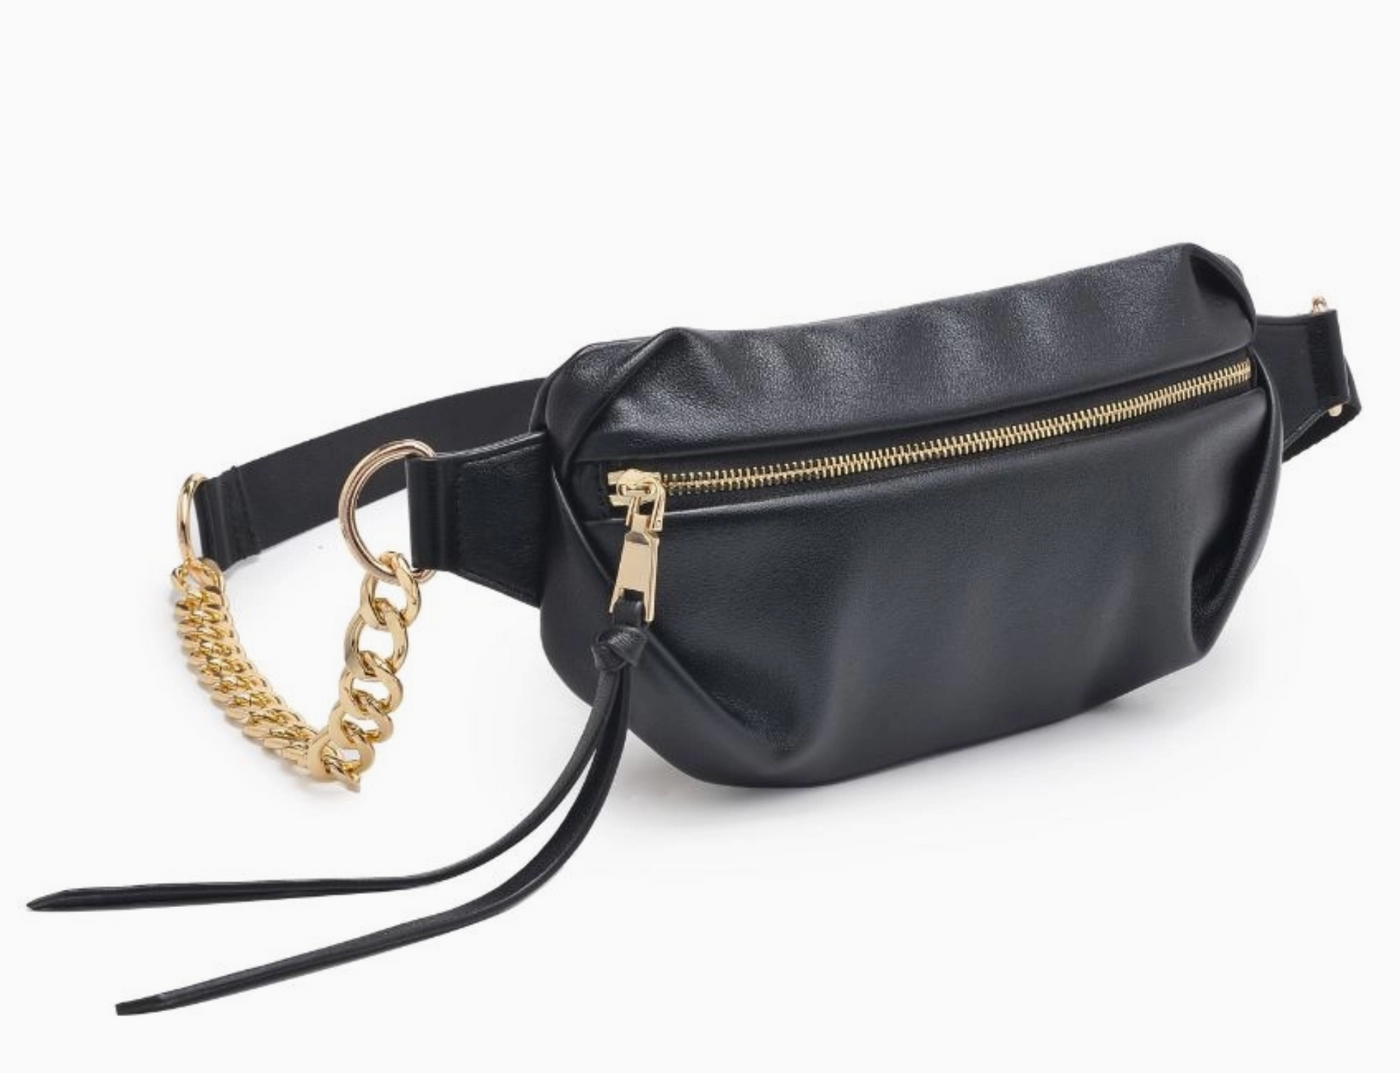 Celine Belt Bag